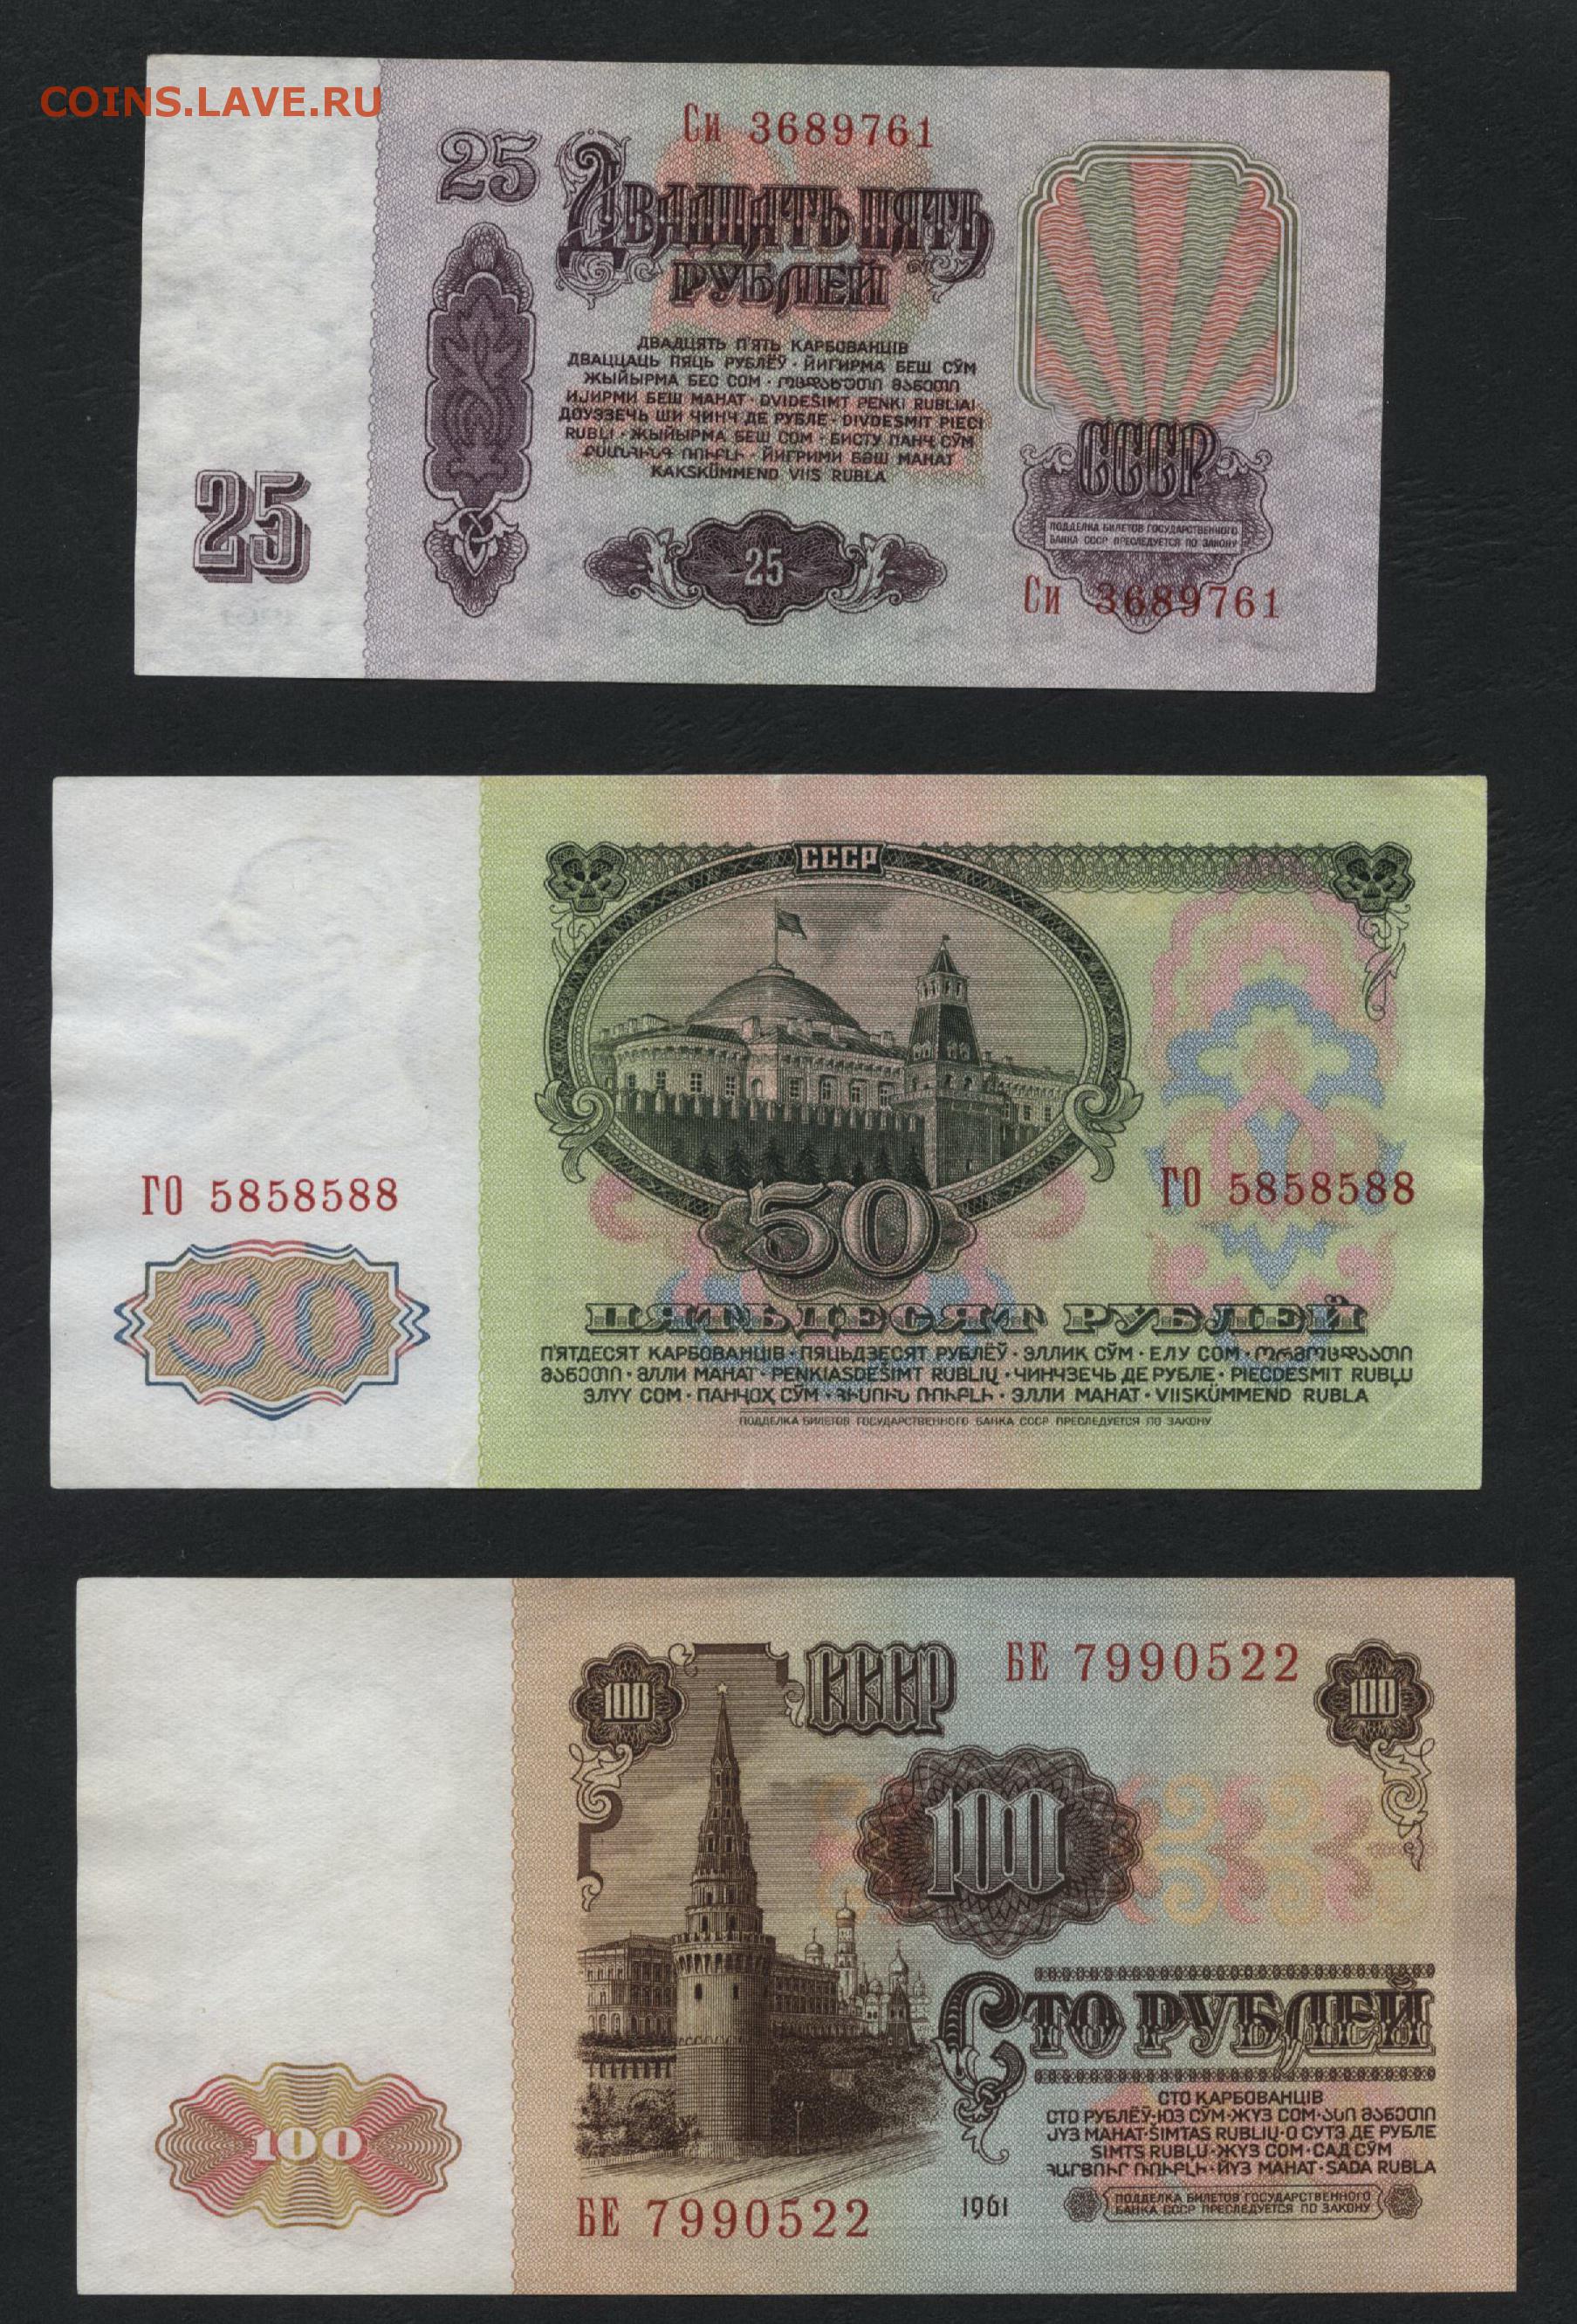 3 сома в рублях. СТО рублей 1961 года. 100 Рублей в Сумах. Сумы в рубли. 5 Сом в рублях.